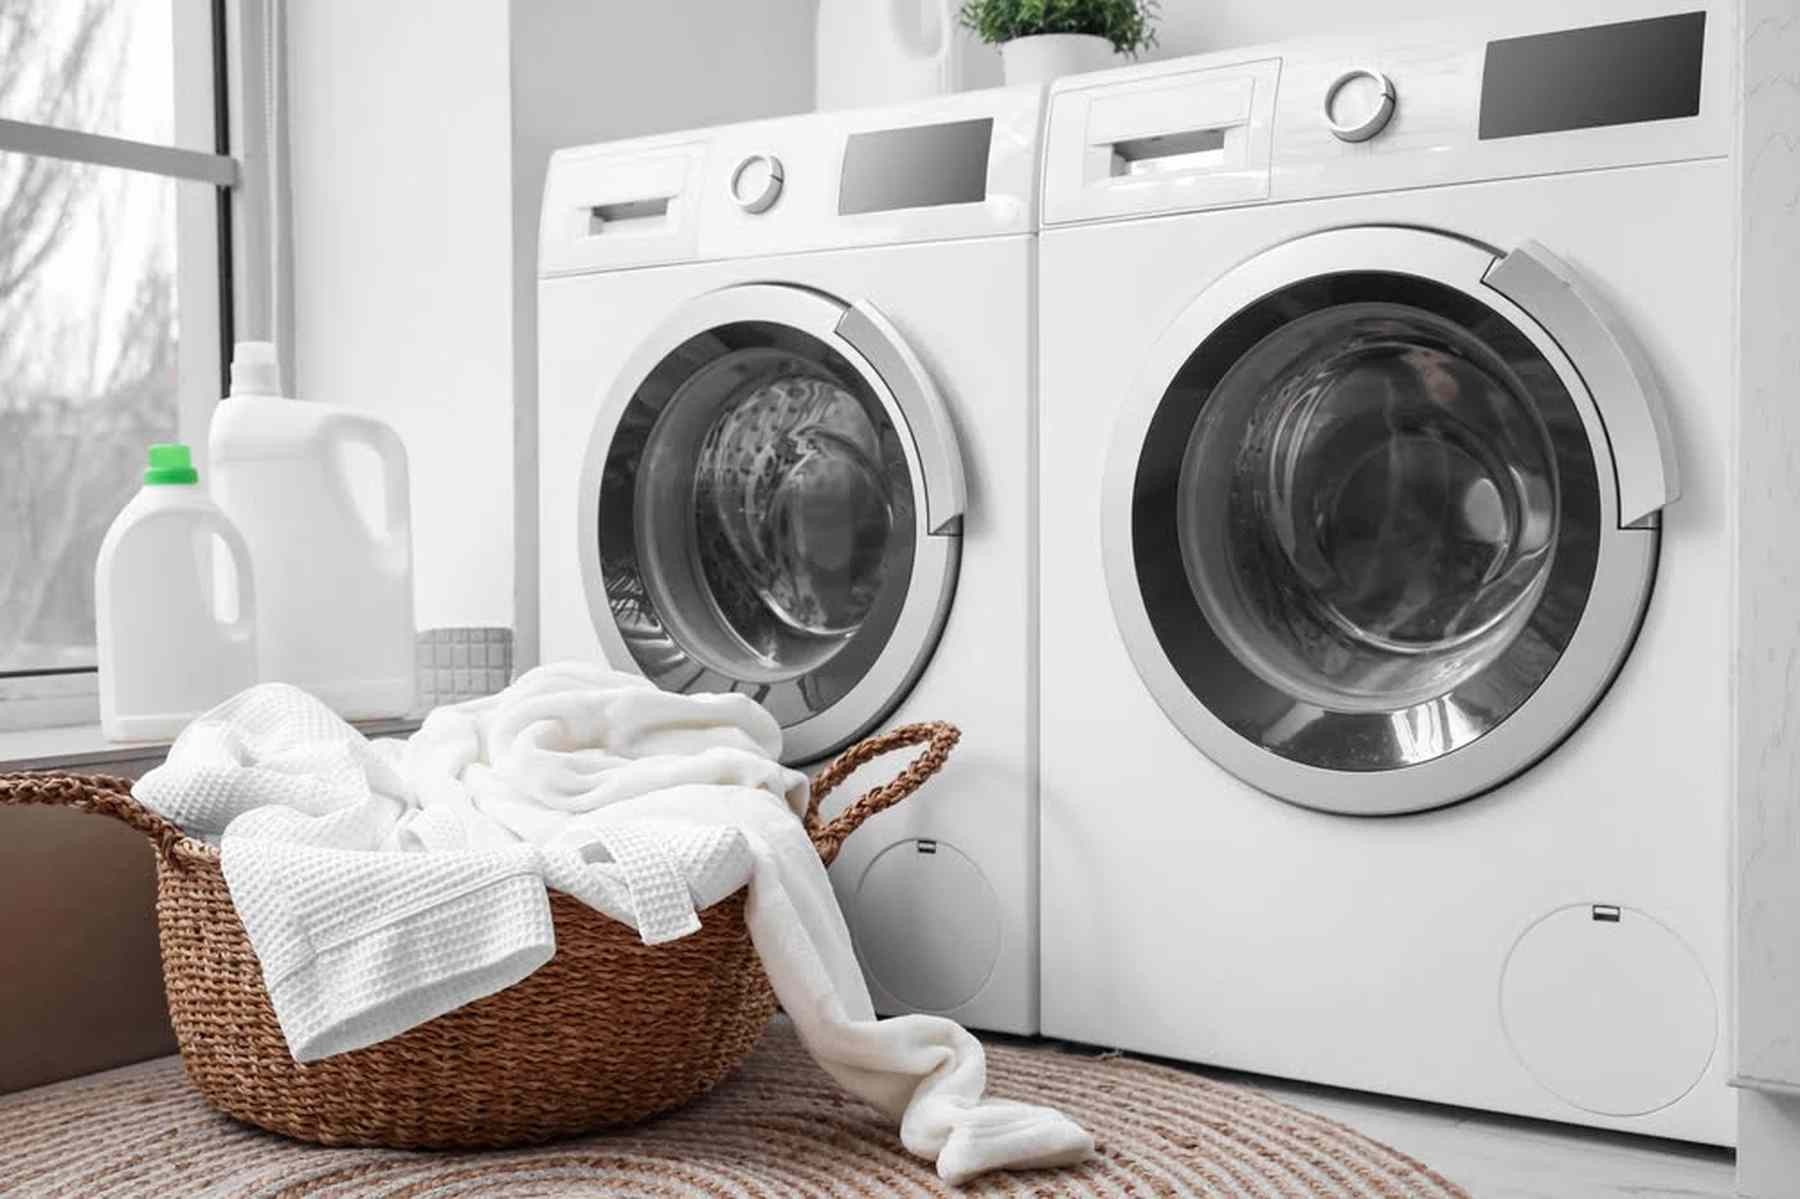 Wasmachine kopen, waar moet je op letten?